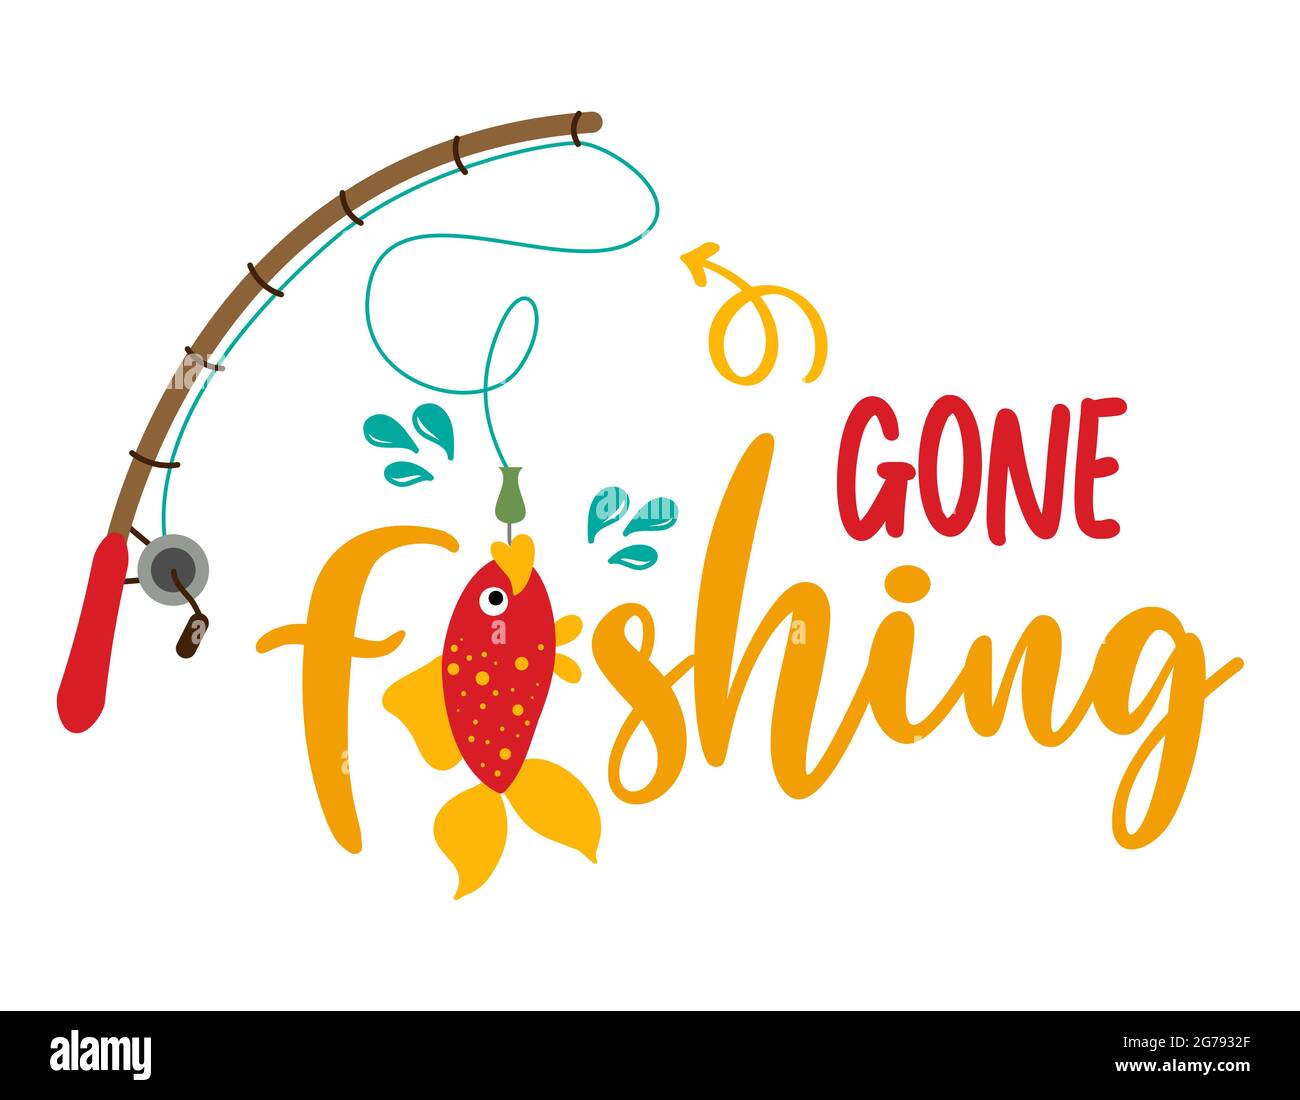 La pêche a disparu - typographie drôle avec le joli poisson sur la canne à pêche. Pour affiche, papier peint, t-shirt, cadeau. Vacances d'été. Inspiration manuscrite Illustration de Vecteur